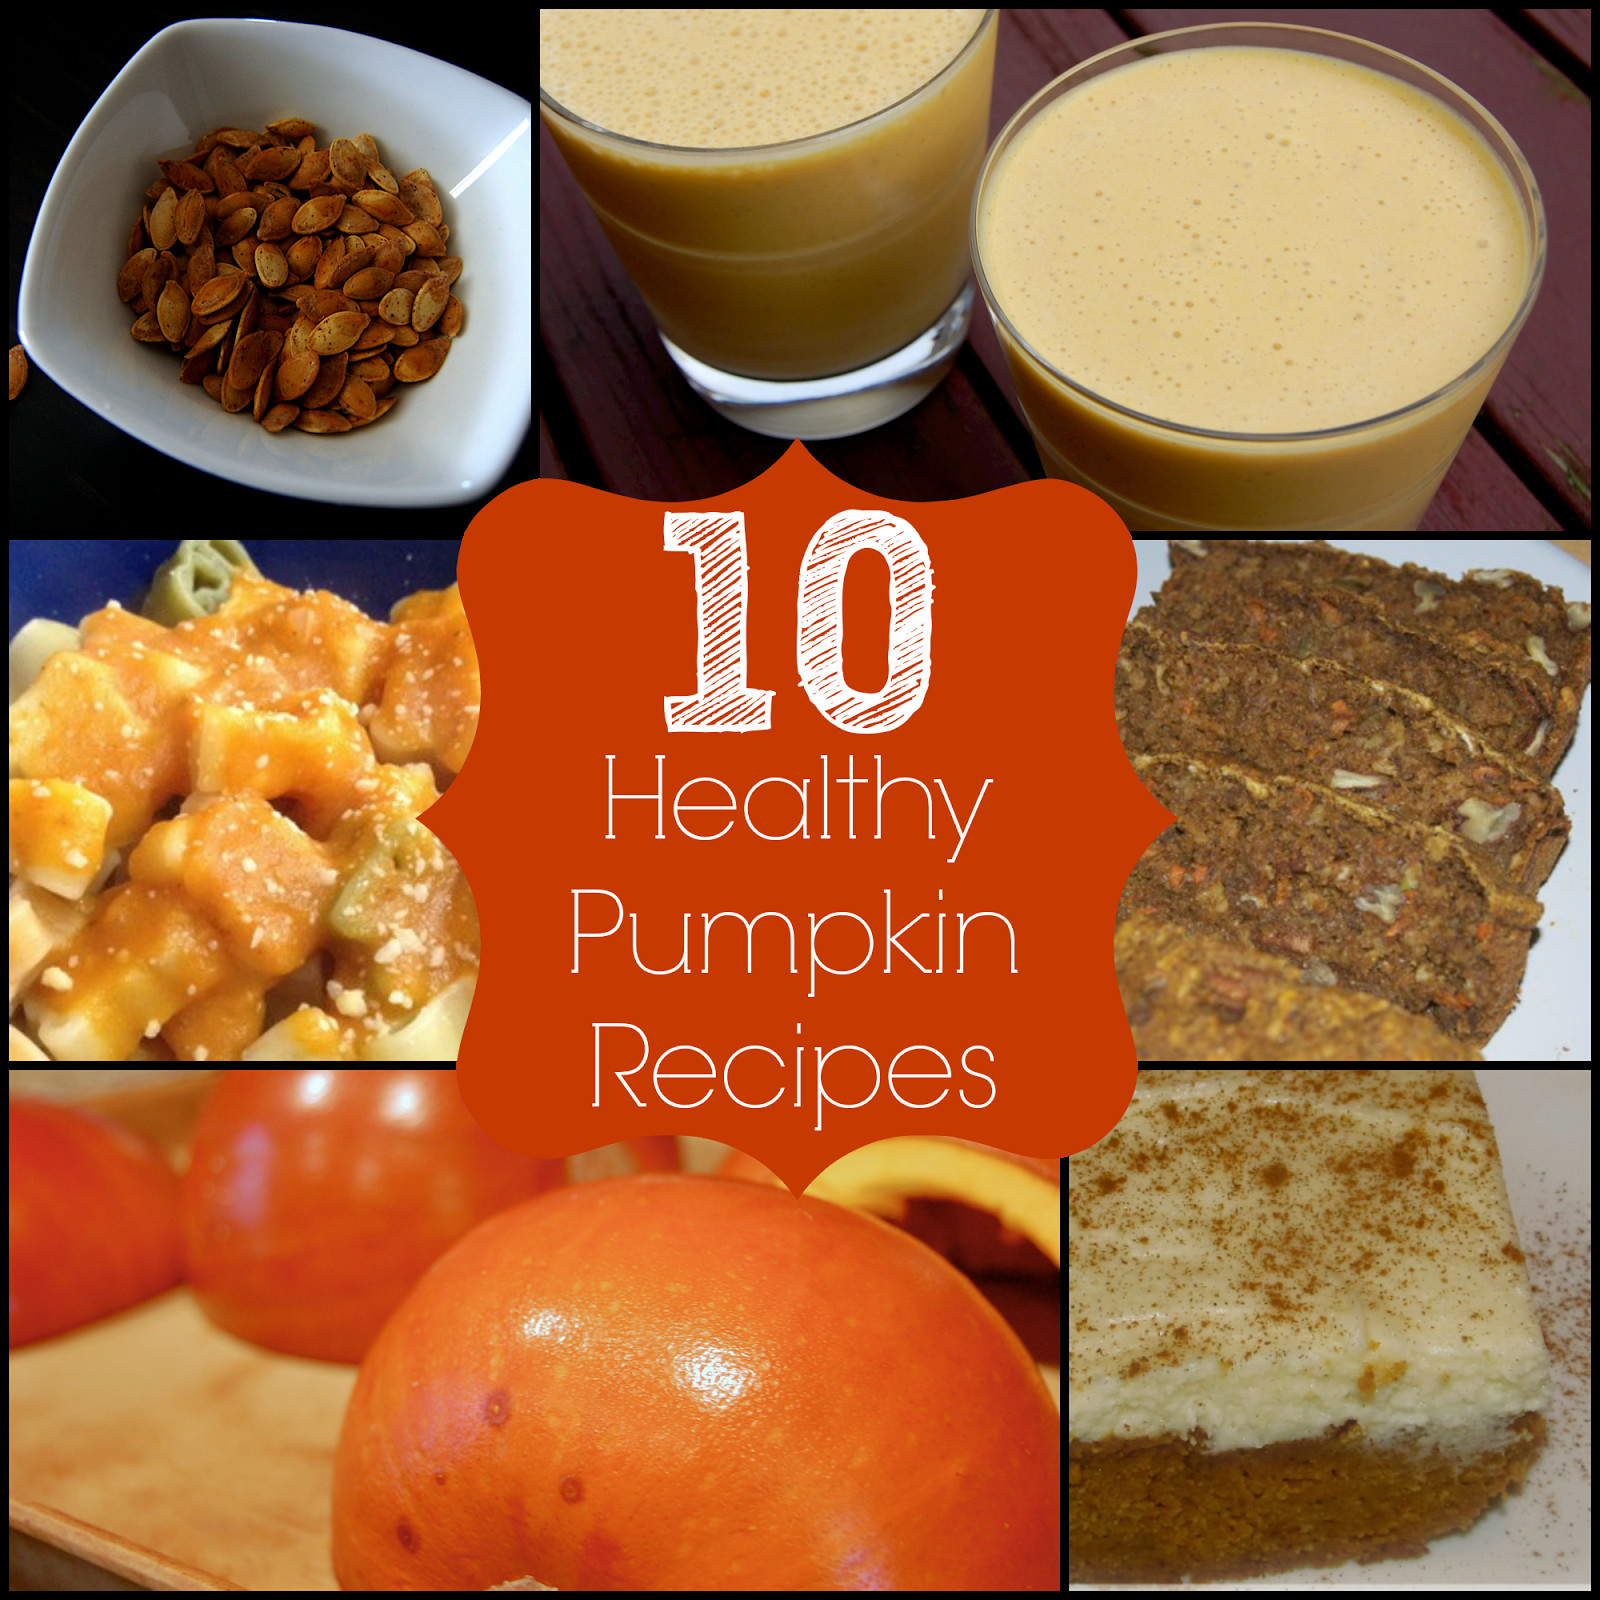 Pumpkin Recipes Healthy
 10 Healthy Pumpkin Recipes The Pistachio Project